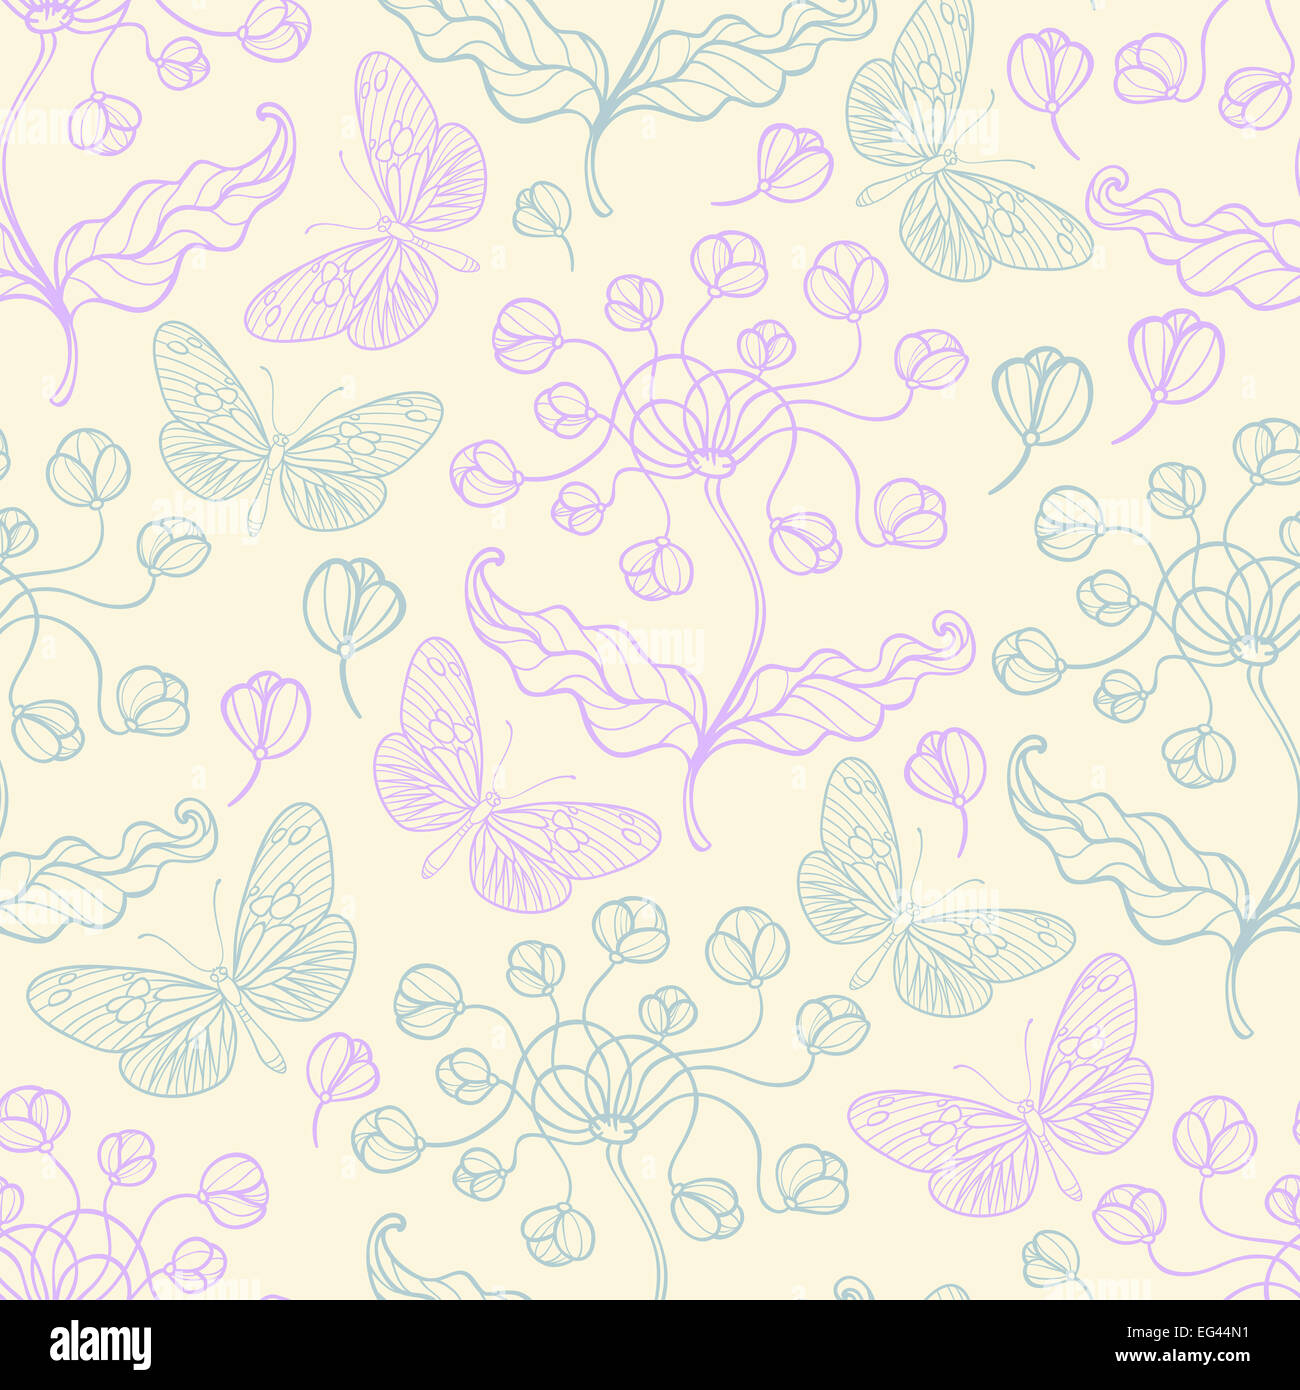 Hand drawn seamless pattern avec fleurs violettes Banque D'Images